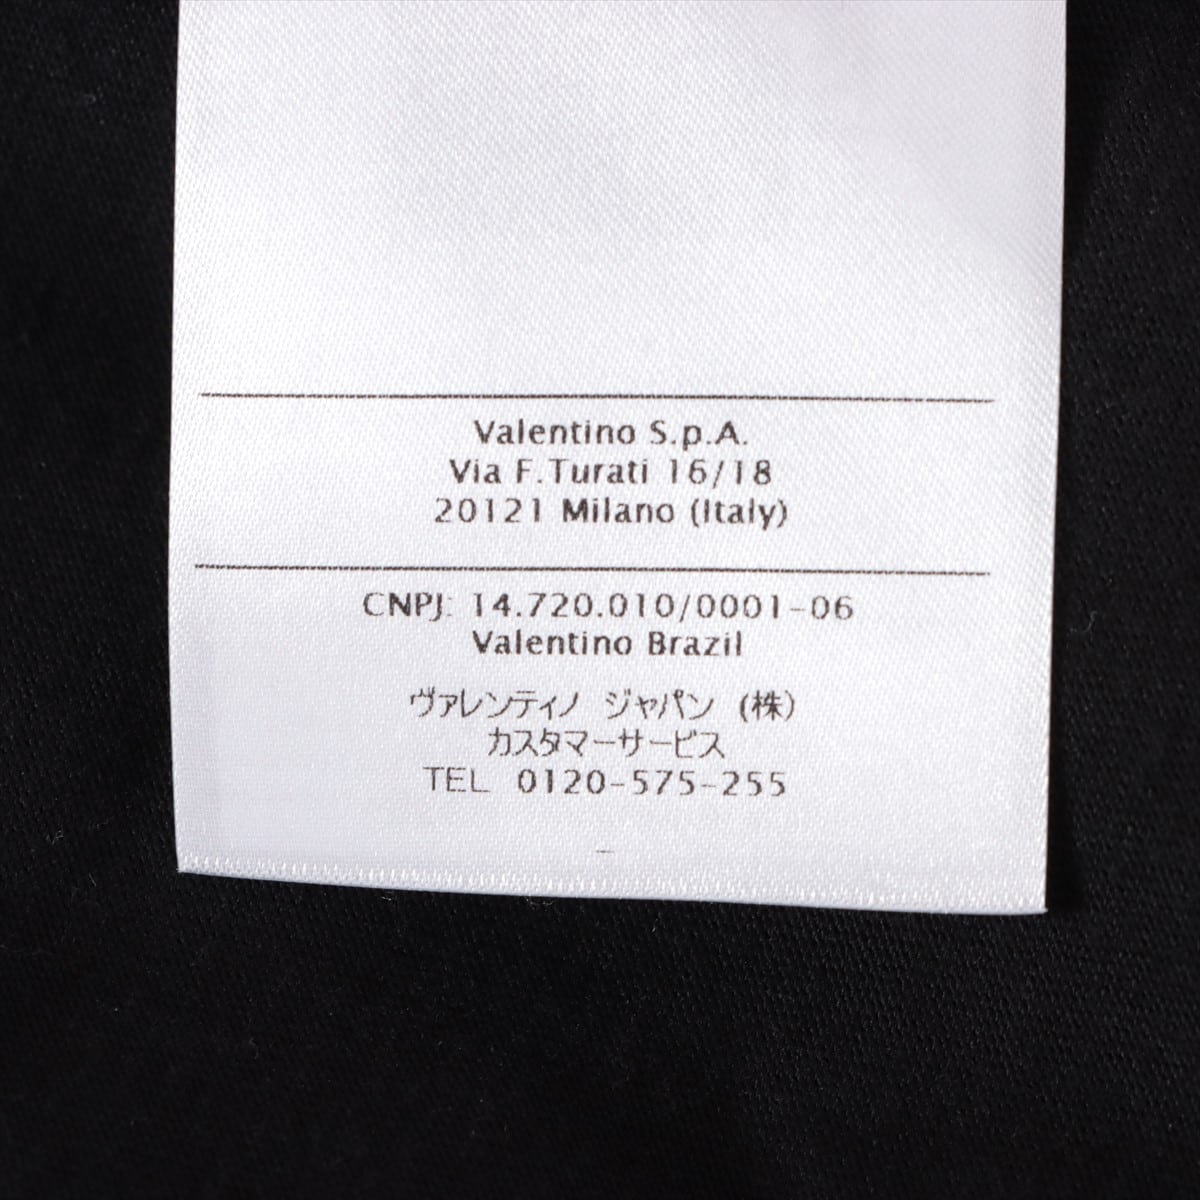 ヴァレンティノ VLTNロゴ コットン Tシャツ L メンズ ブラック